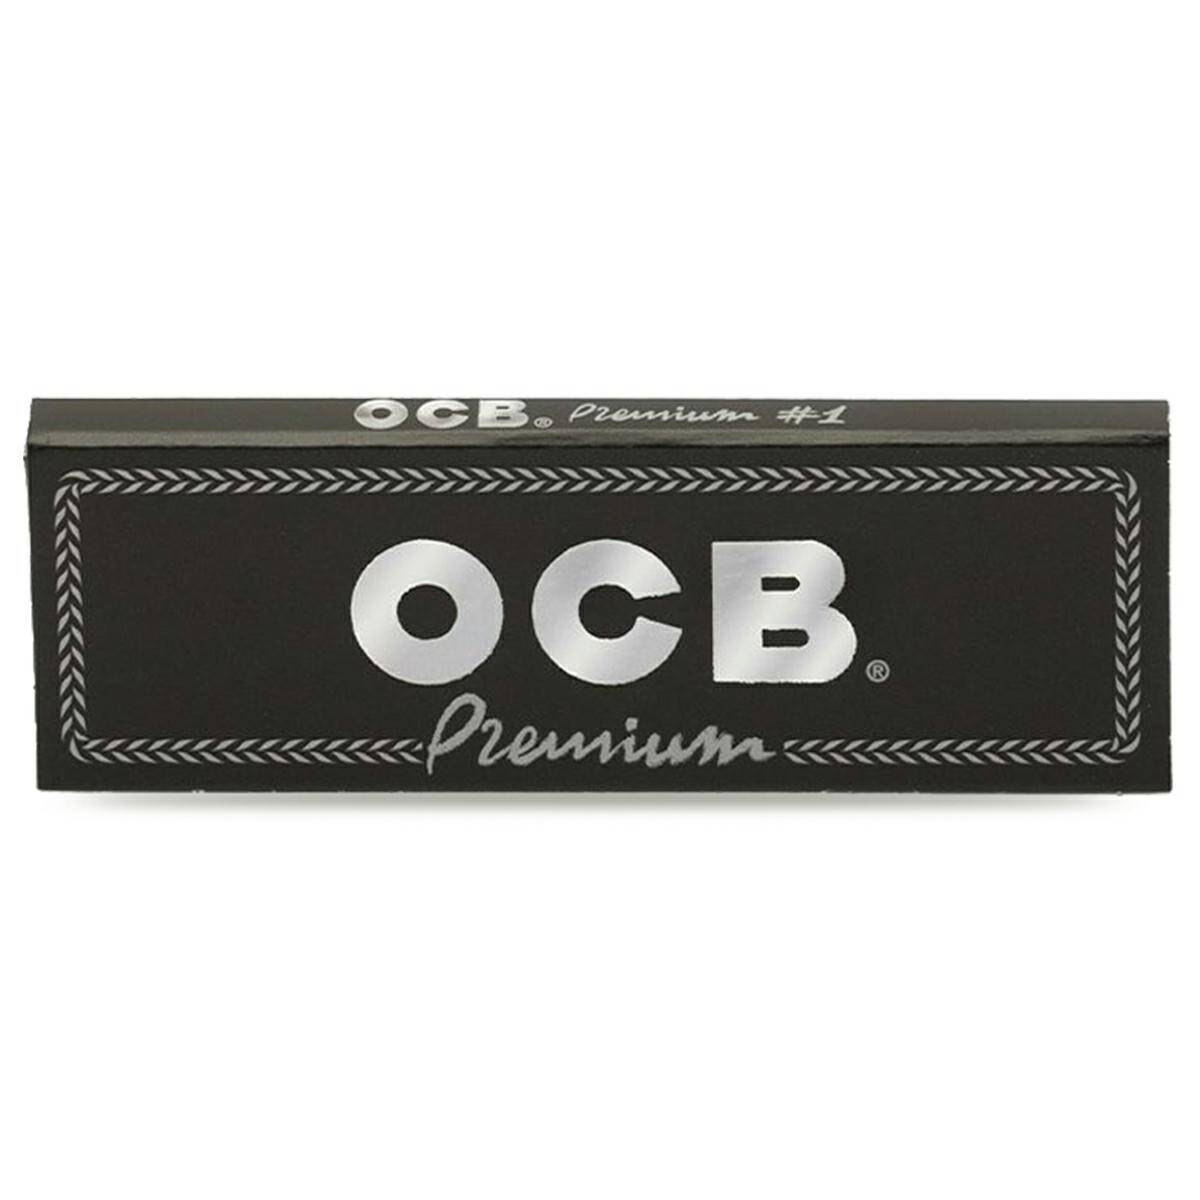 OCB Premium No.1